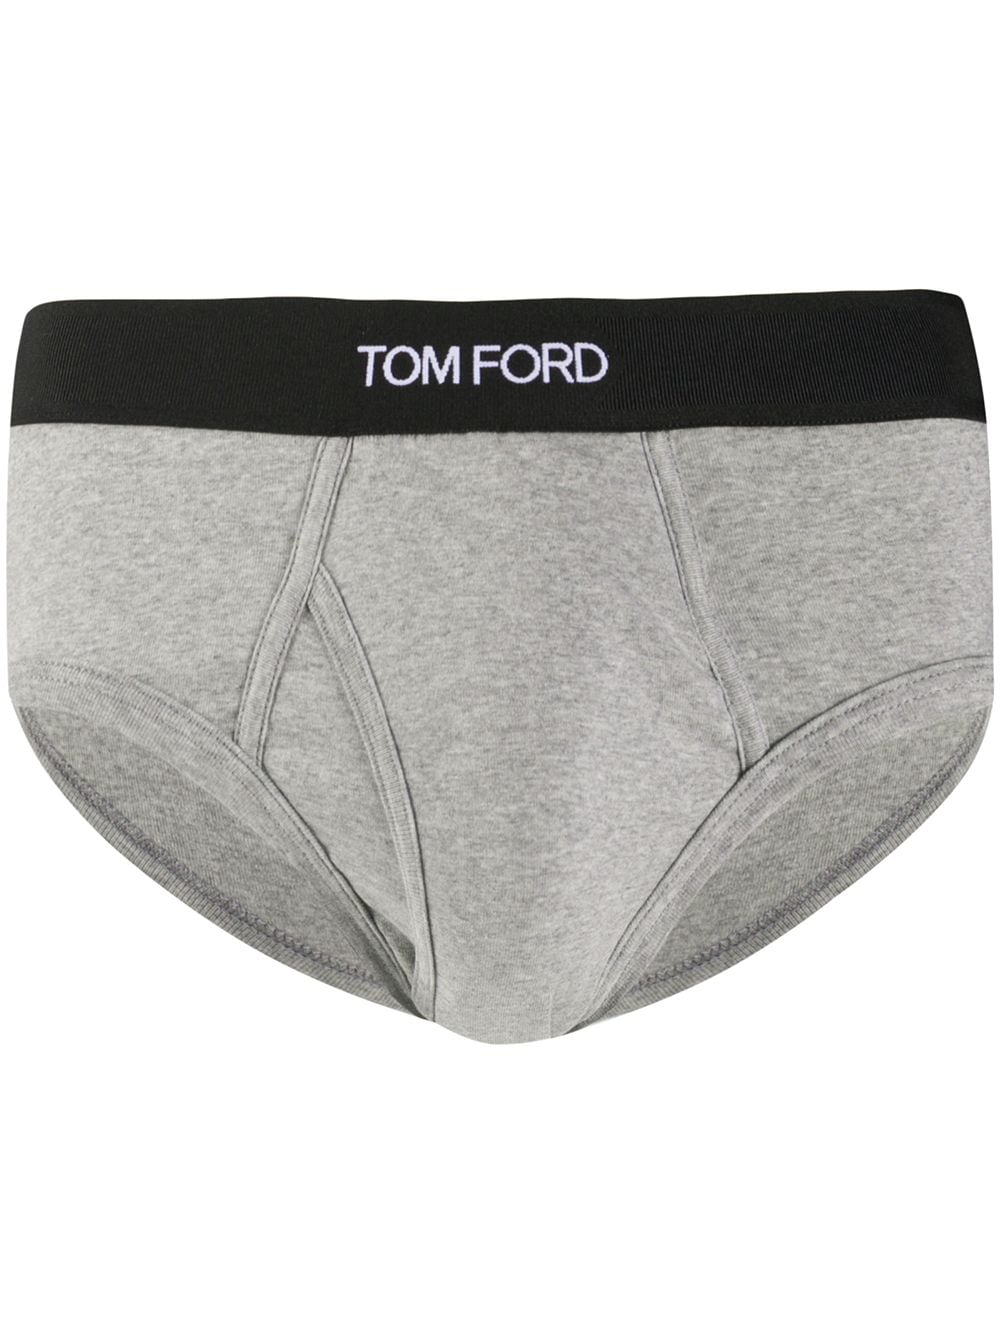 TOM FORD logo-waistband Briefs - Farfetch